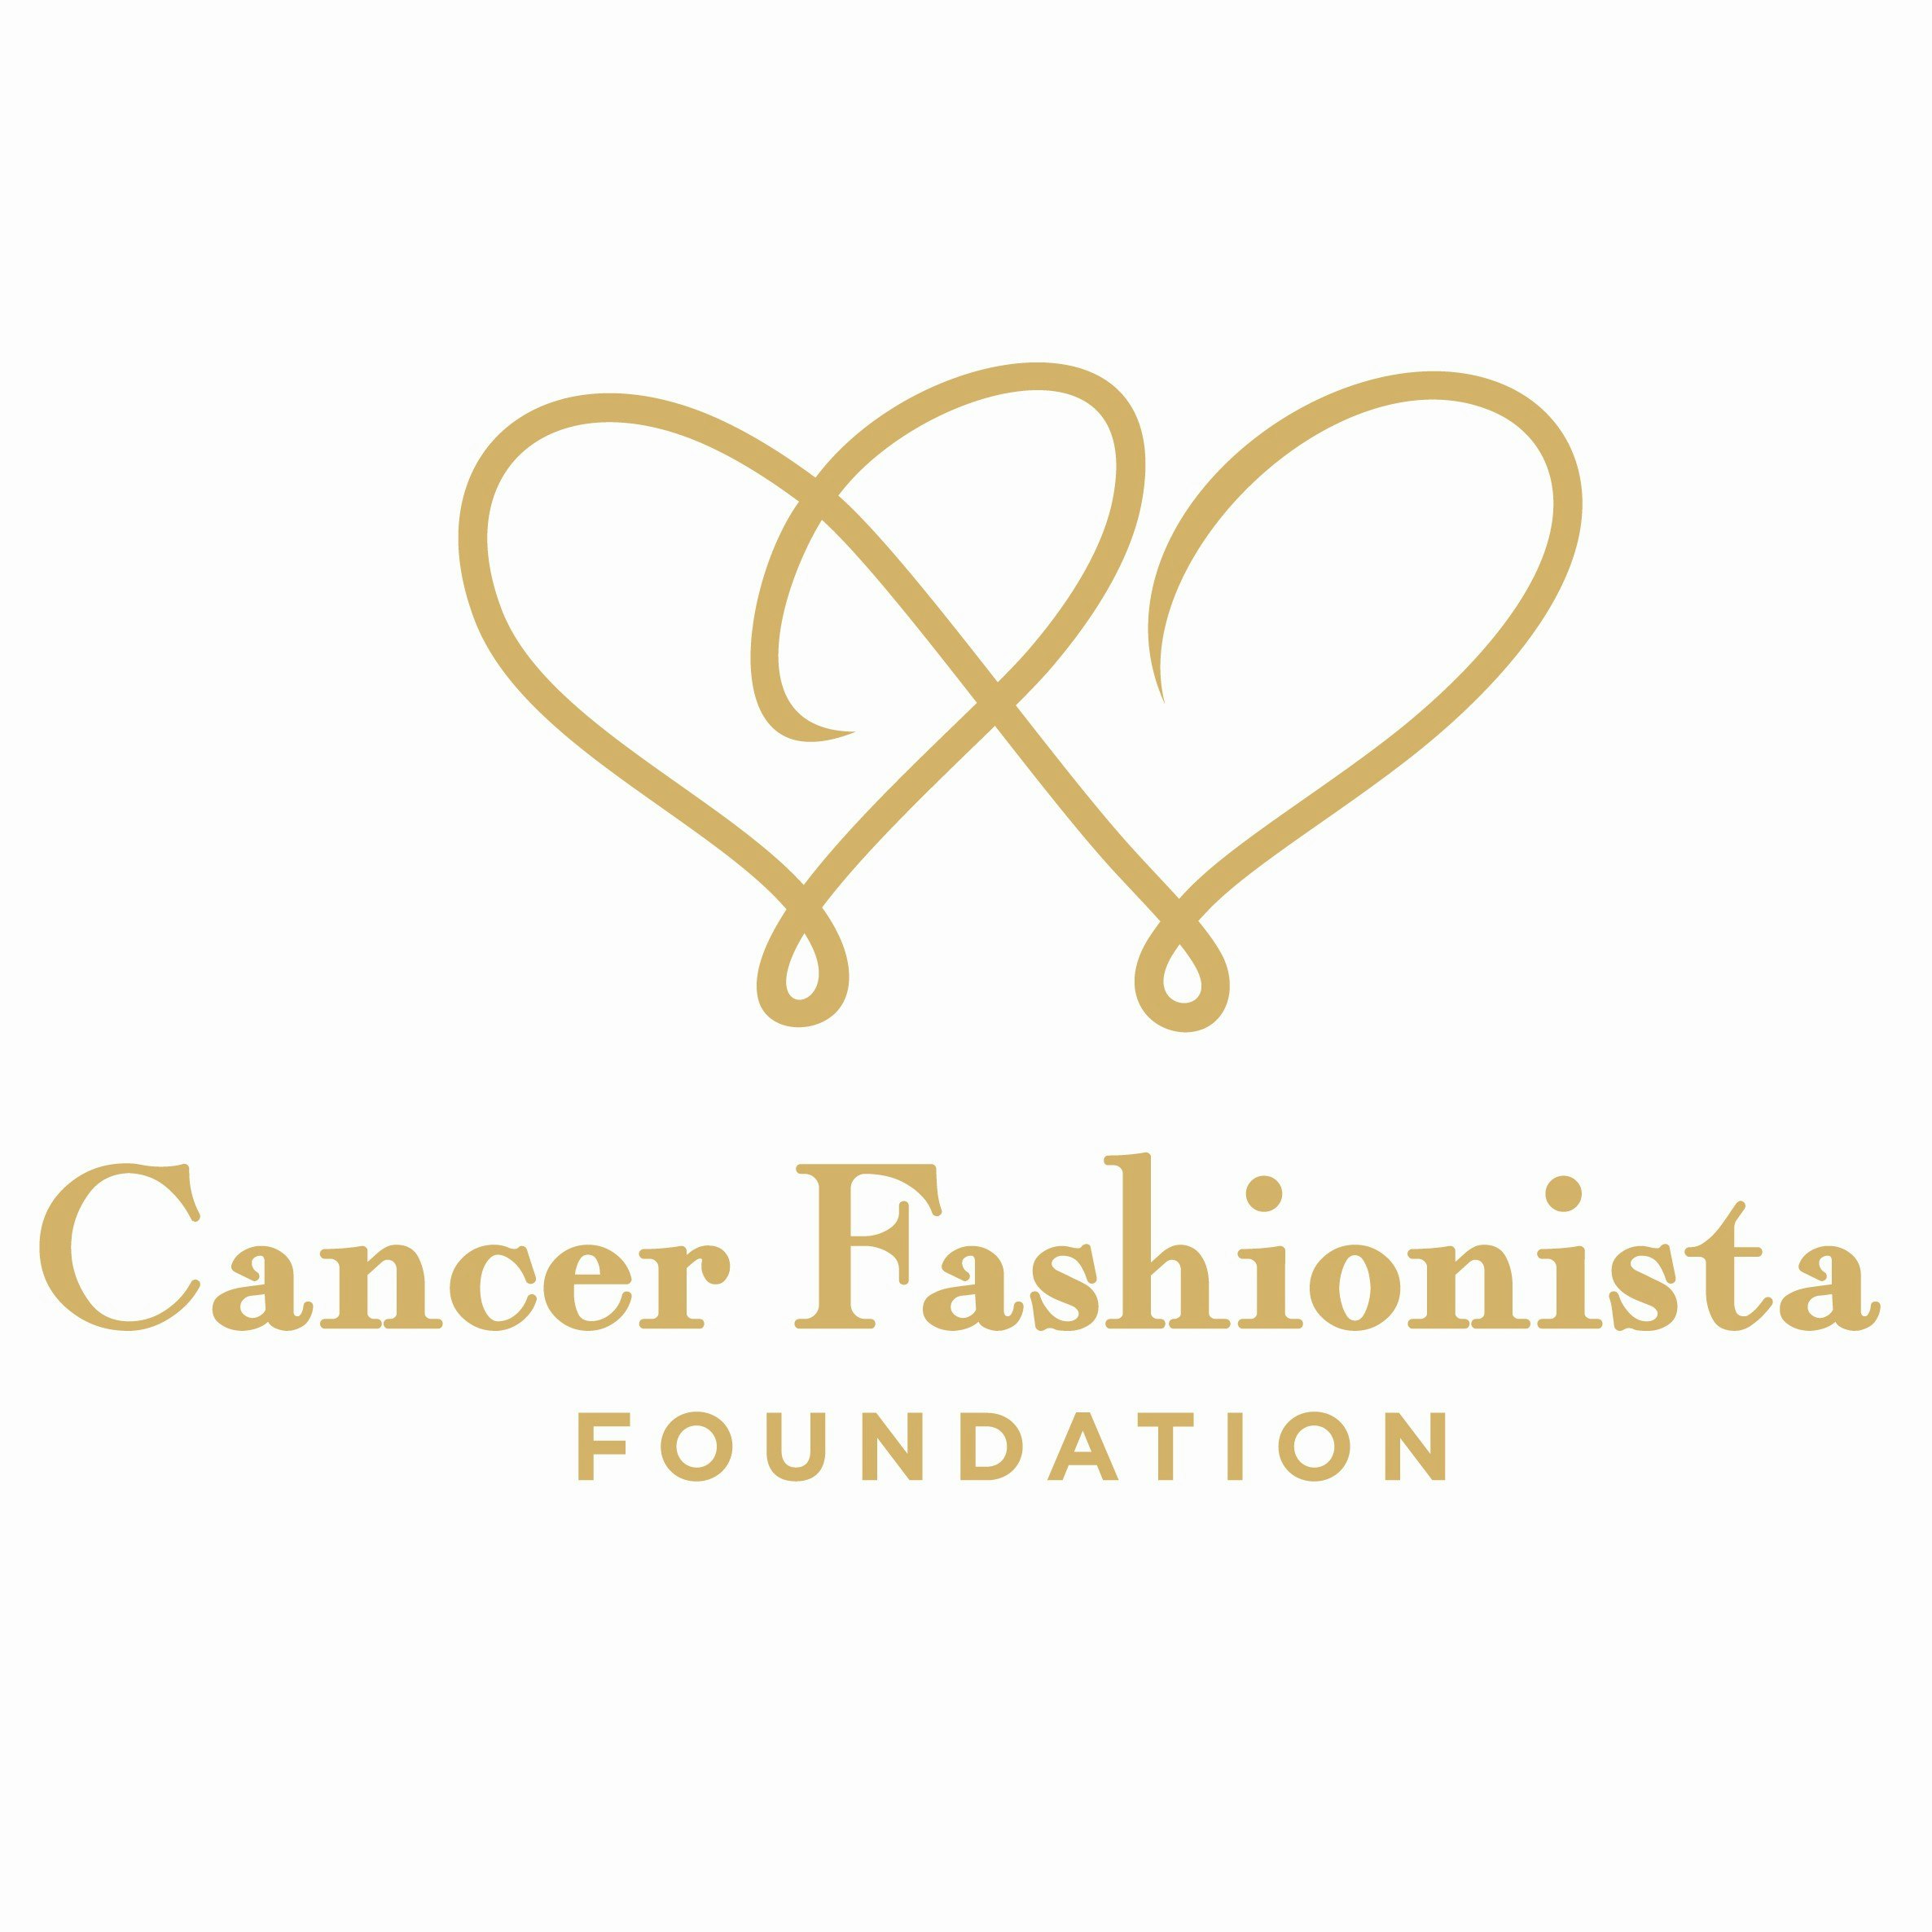 Fff Cancer Fashionista Foundation Lo